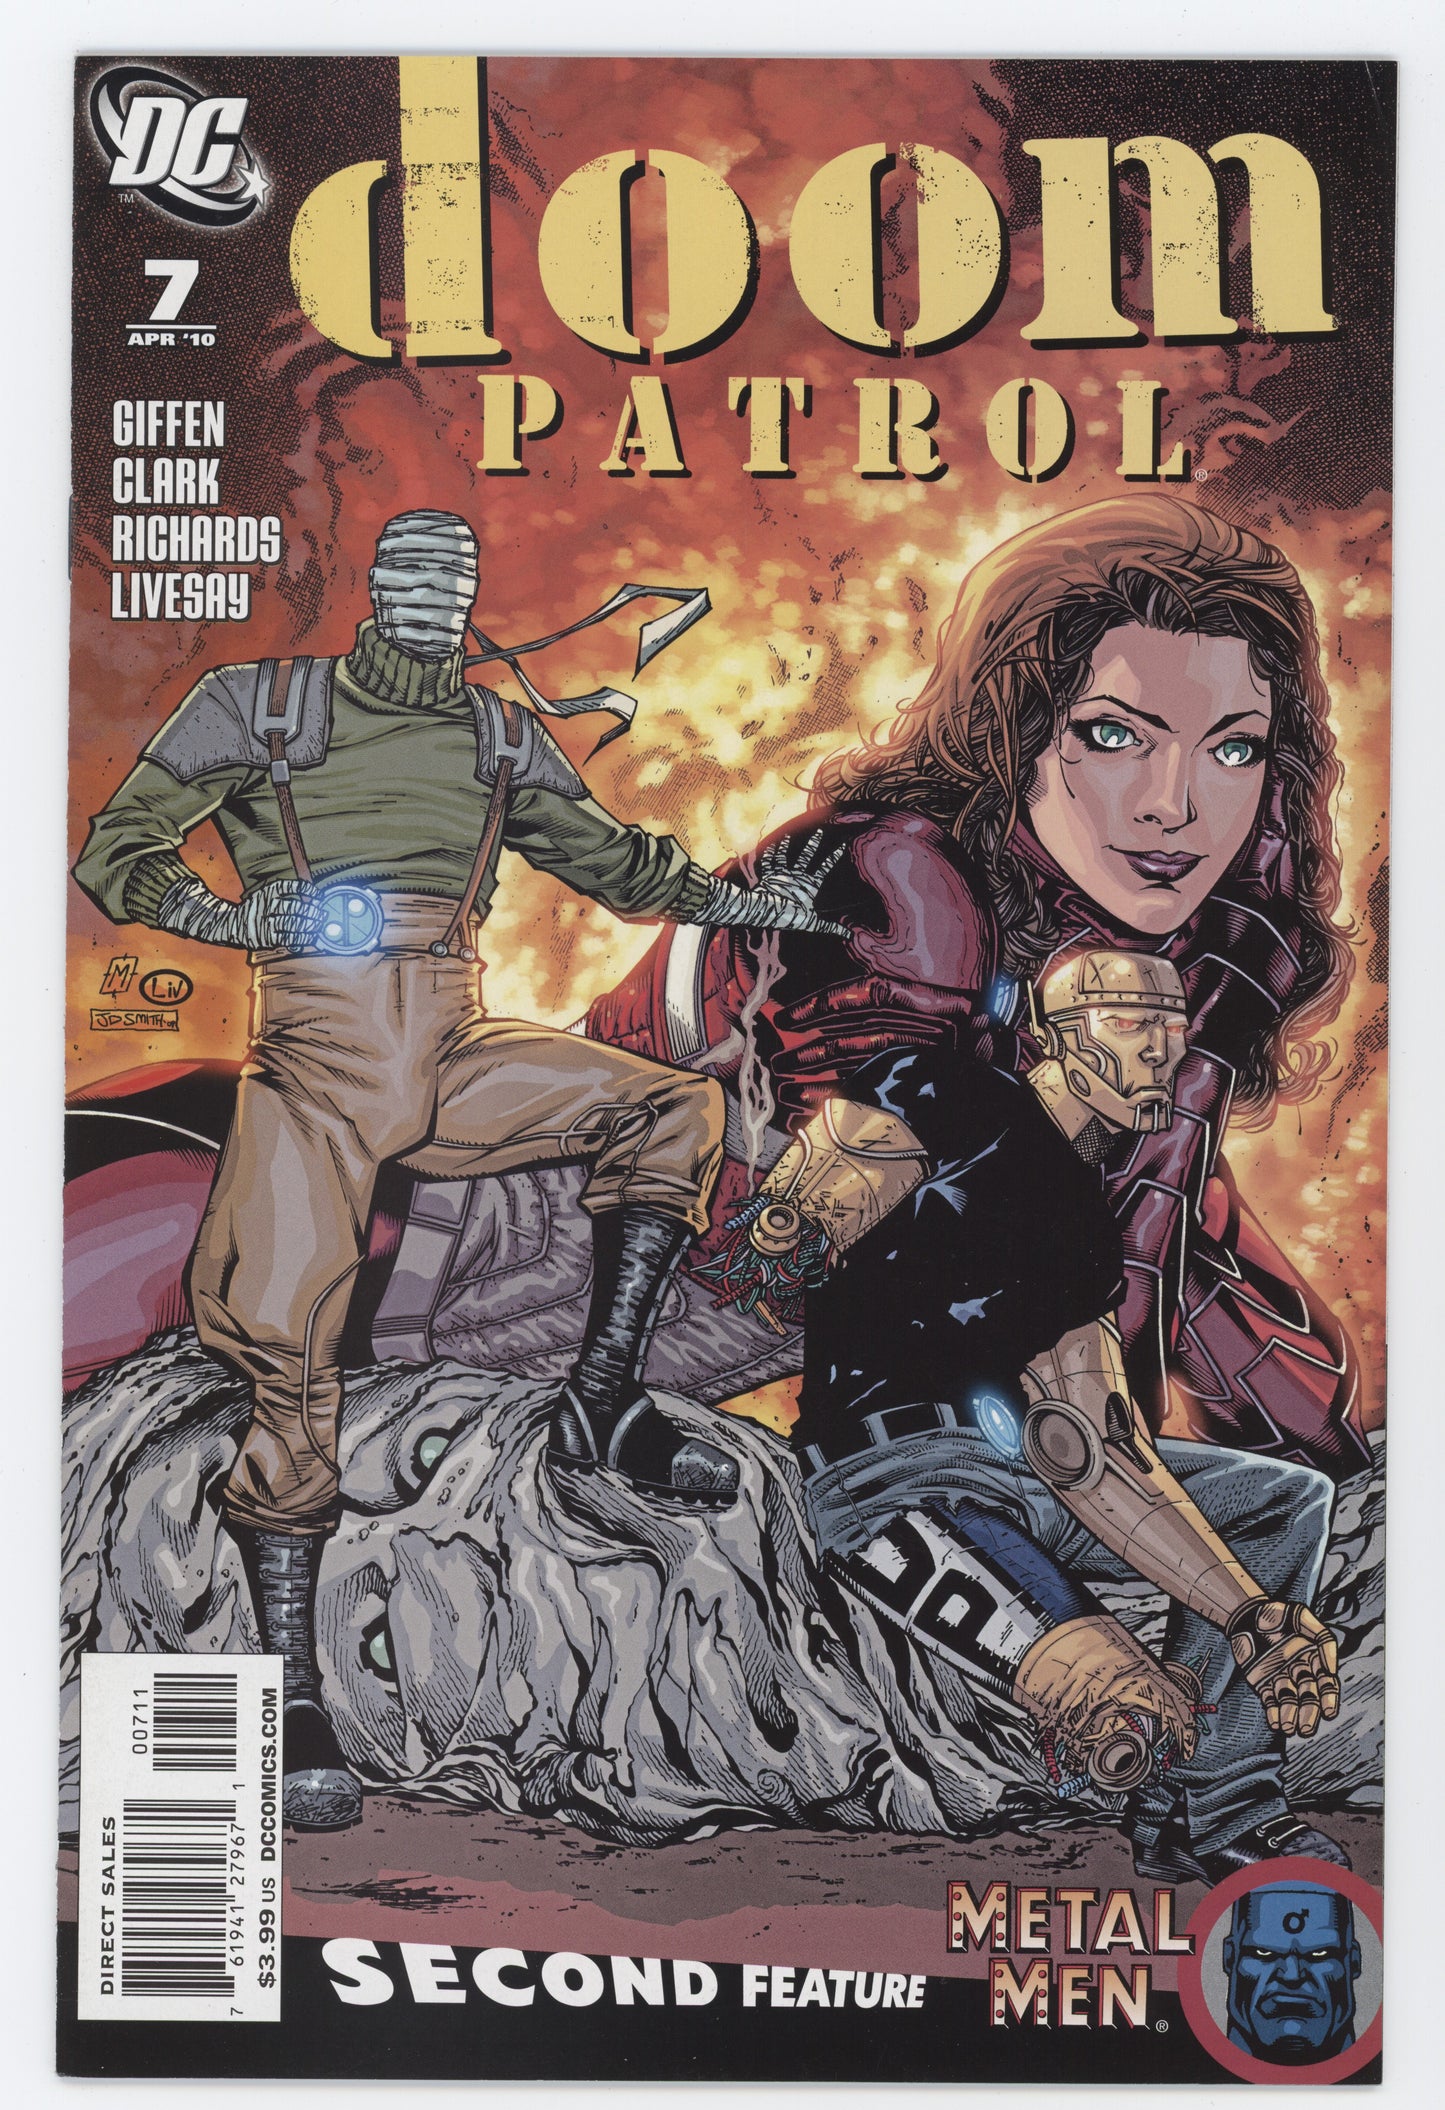 Doom Patrol #7 5th Series DC 2010 Matthew Clark Keith Giffen Metal Men